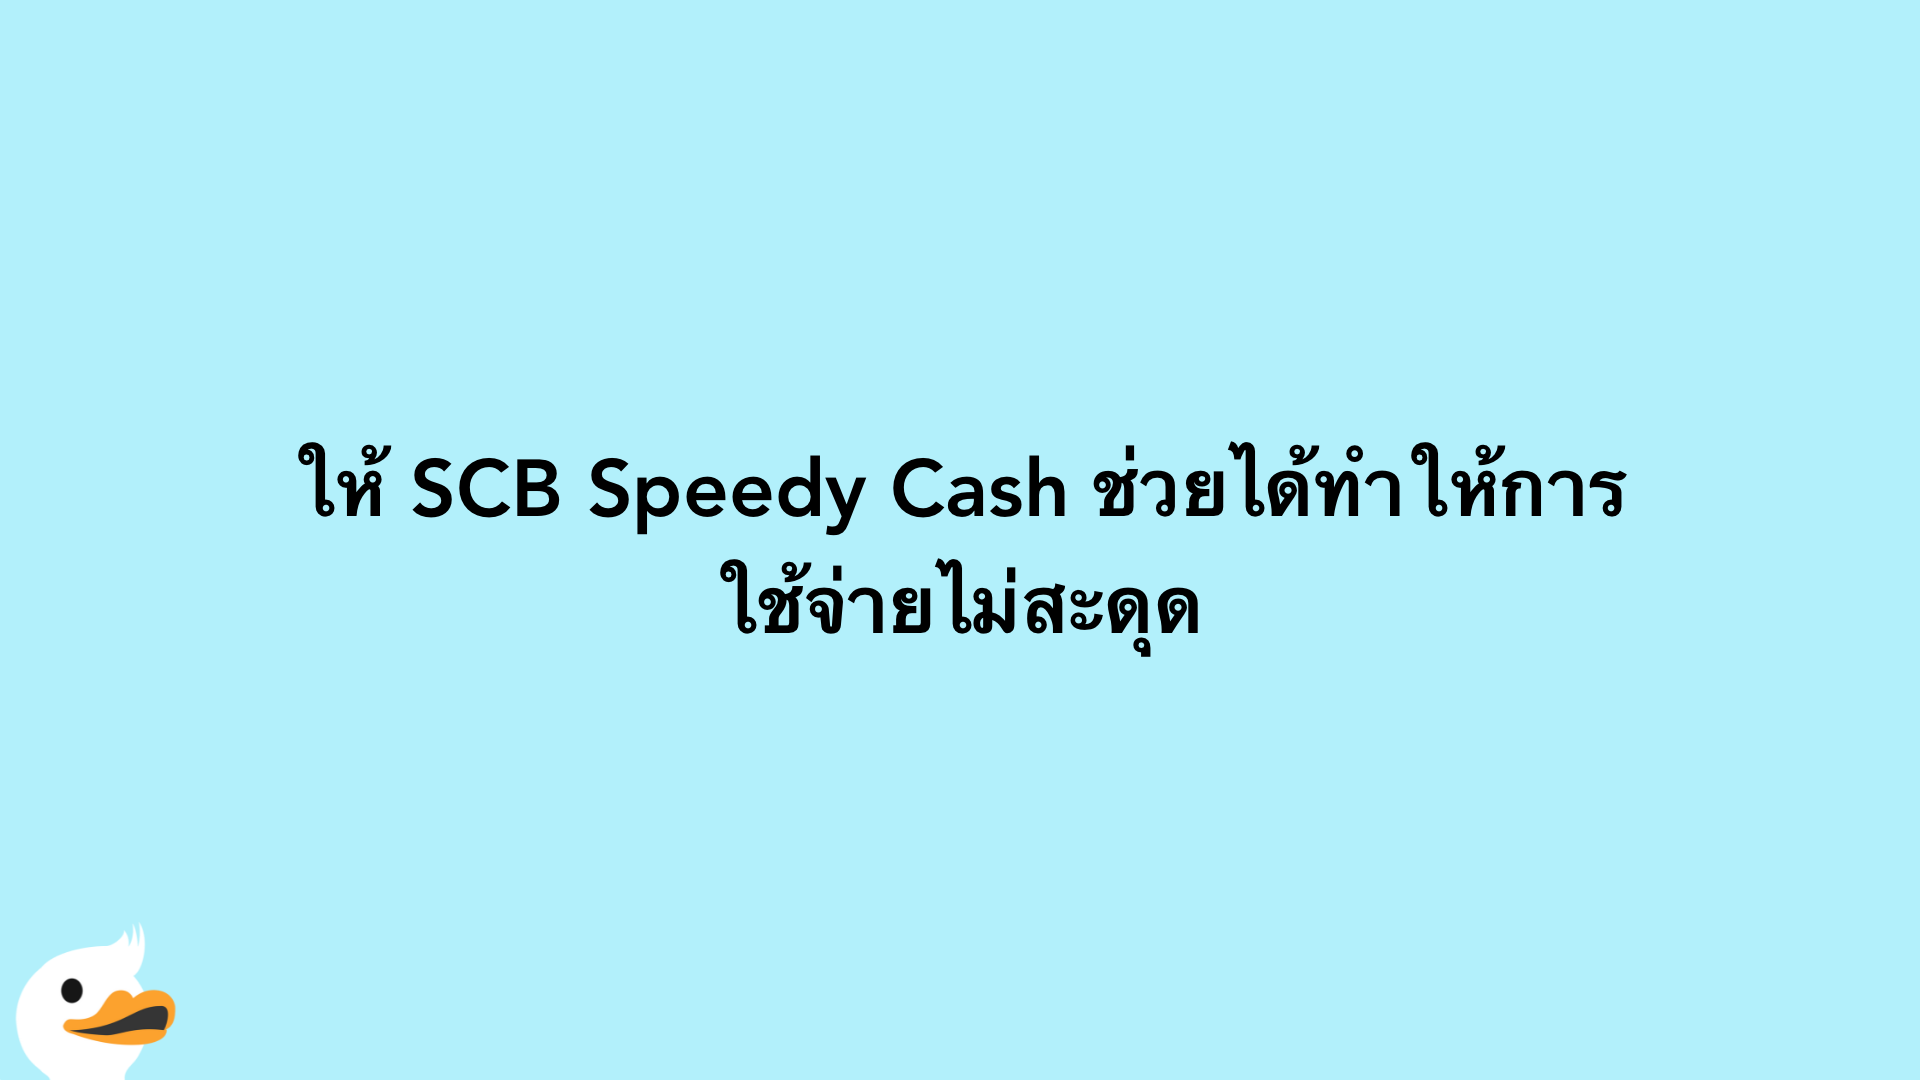 ให้ SCB Speedy Cash ช่วยได้ทำให้การใช้จ่ายไม่สะดุด